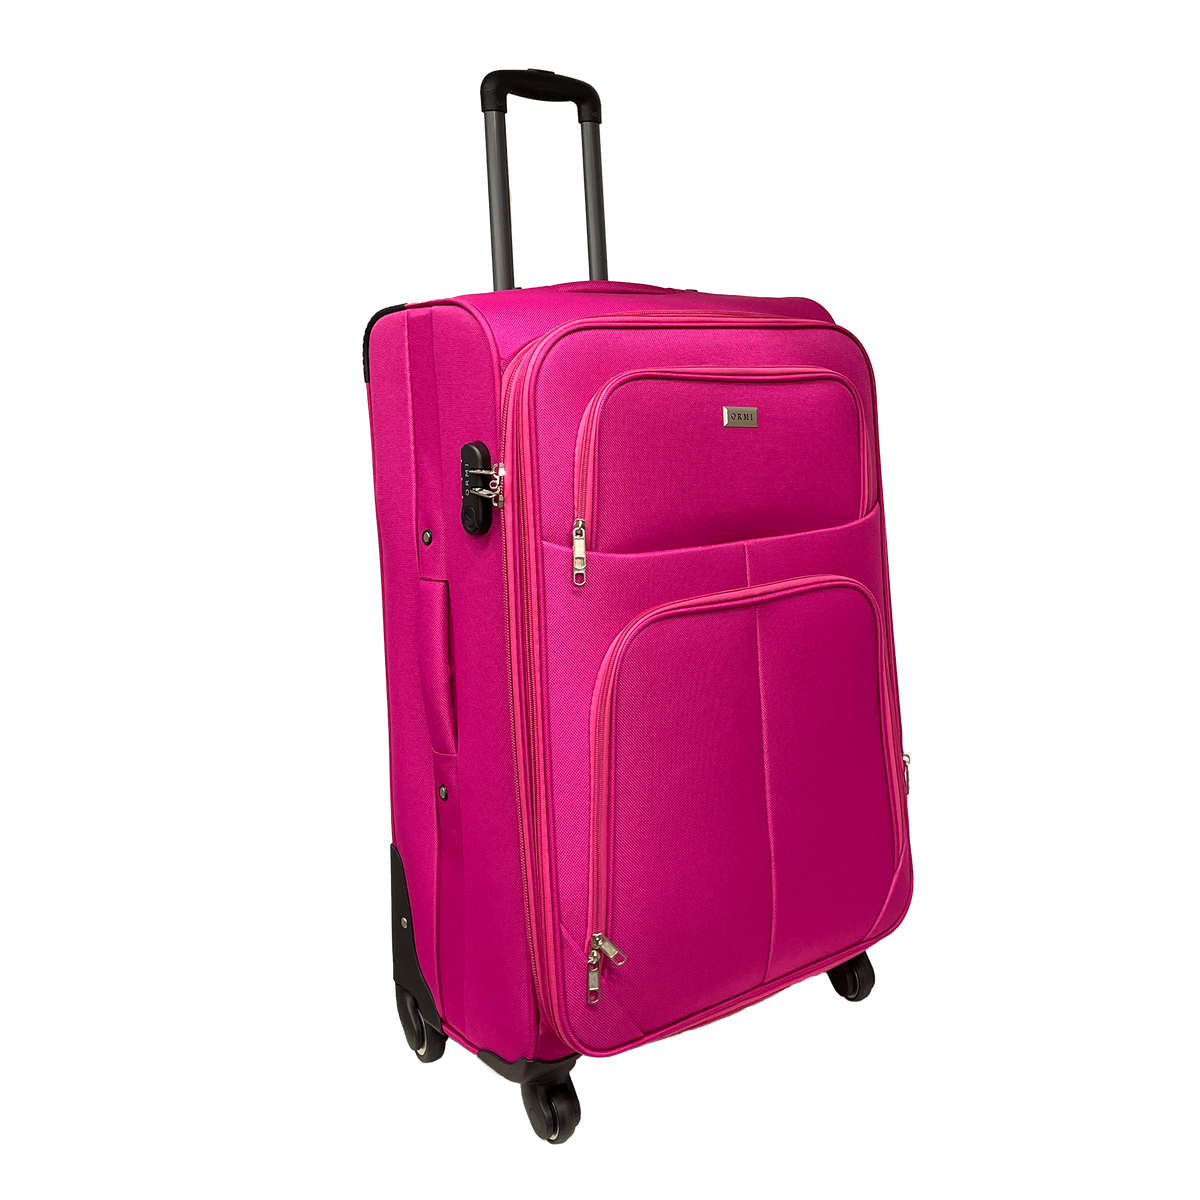 Nagy, félkemény, bővíthető Ormi bőrönd 75x48x30/35 cm - Ütésálló és strapabíró anyag